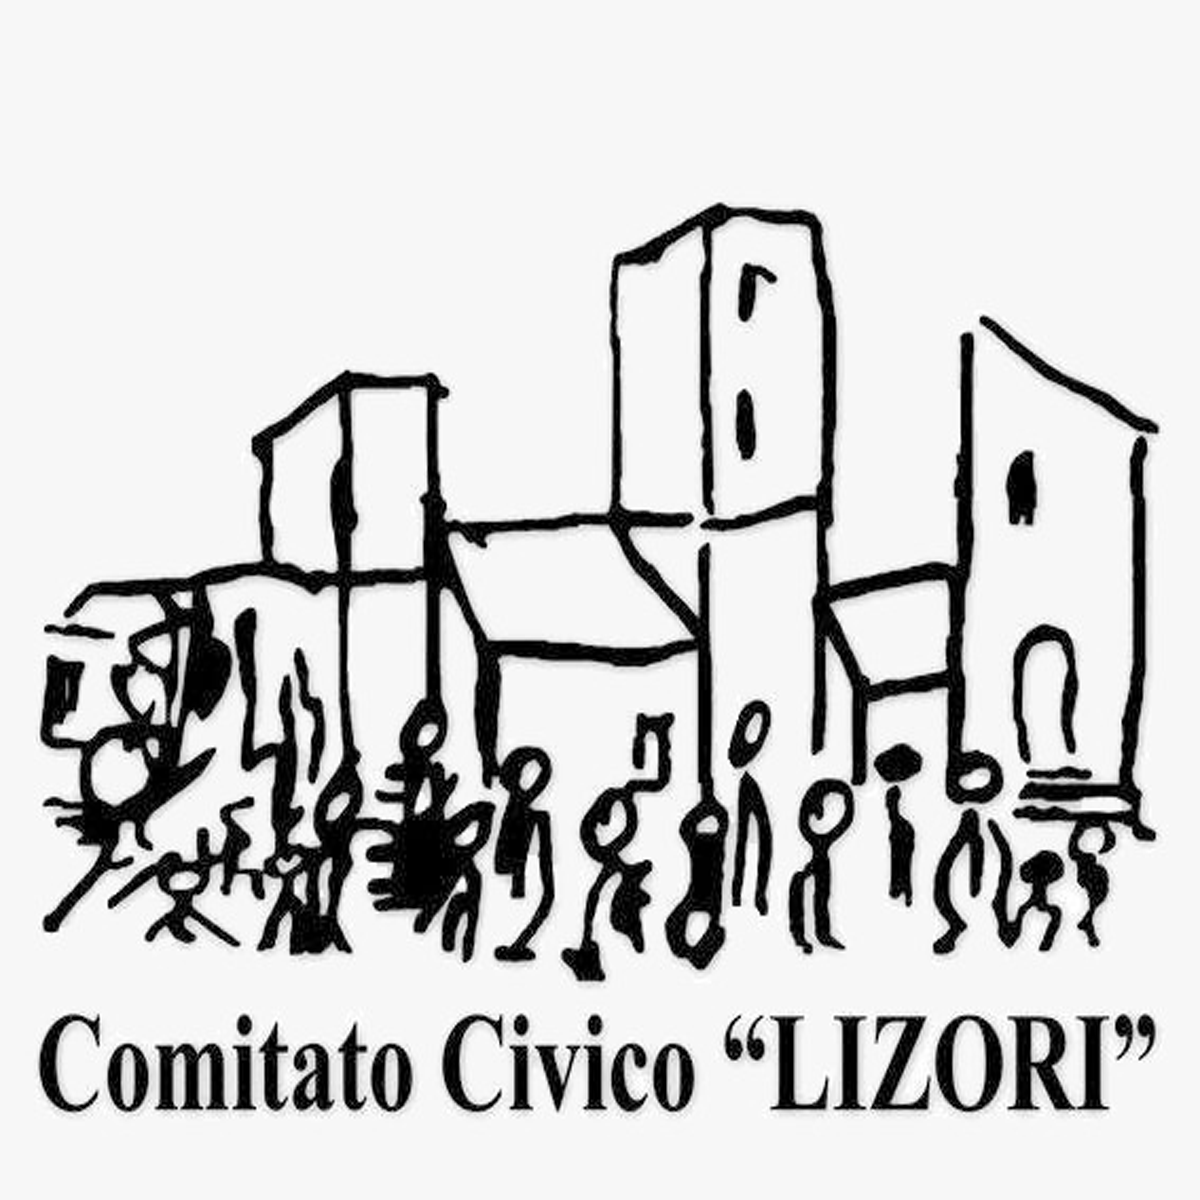 Comitato Civico de Lizori